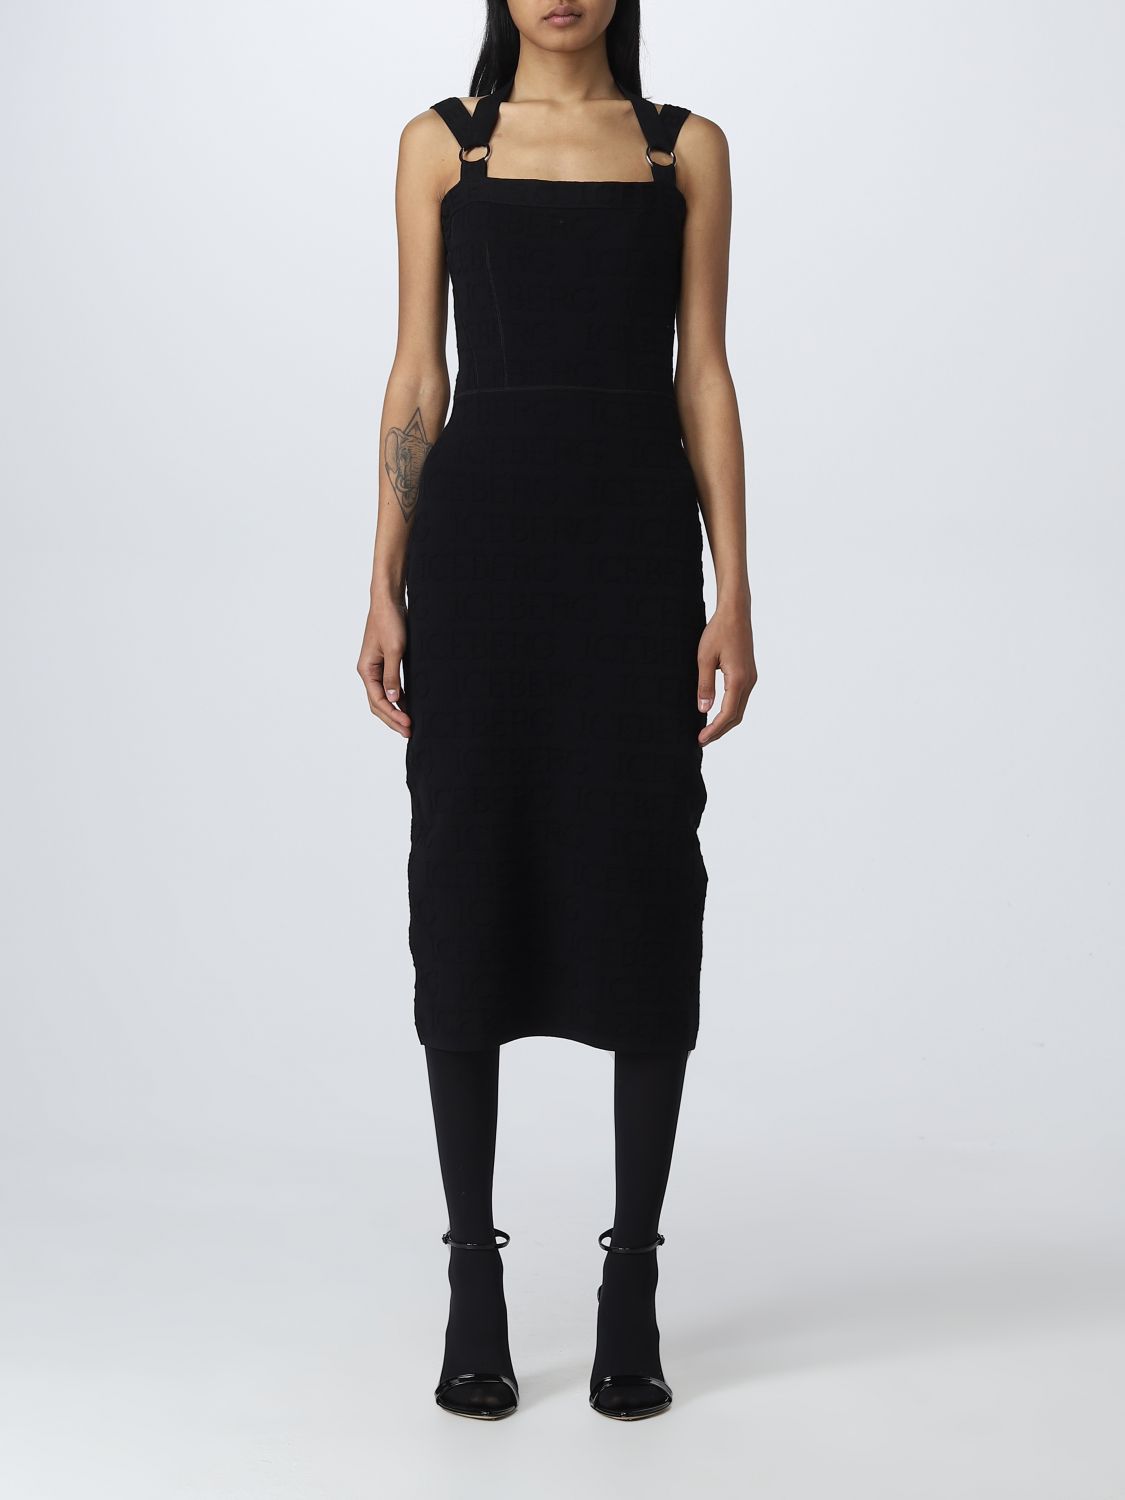 ICEBERG: dress for woman - Black | Iceberg dress AH017499 online on ...